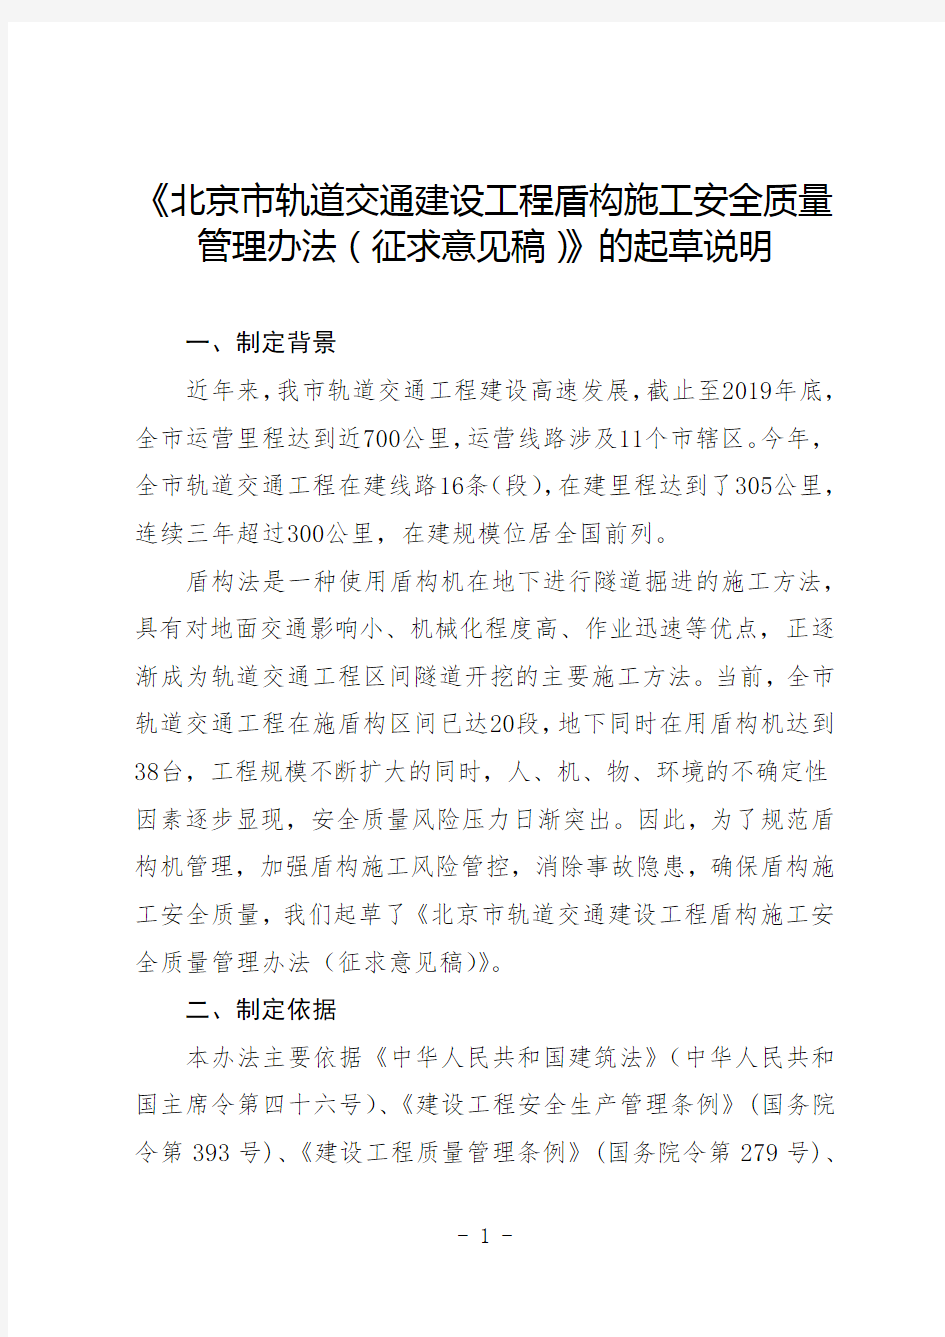 《北京市轨道交通建设工程盾构施工安全质量管理办法(征求